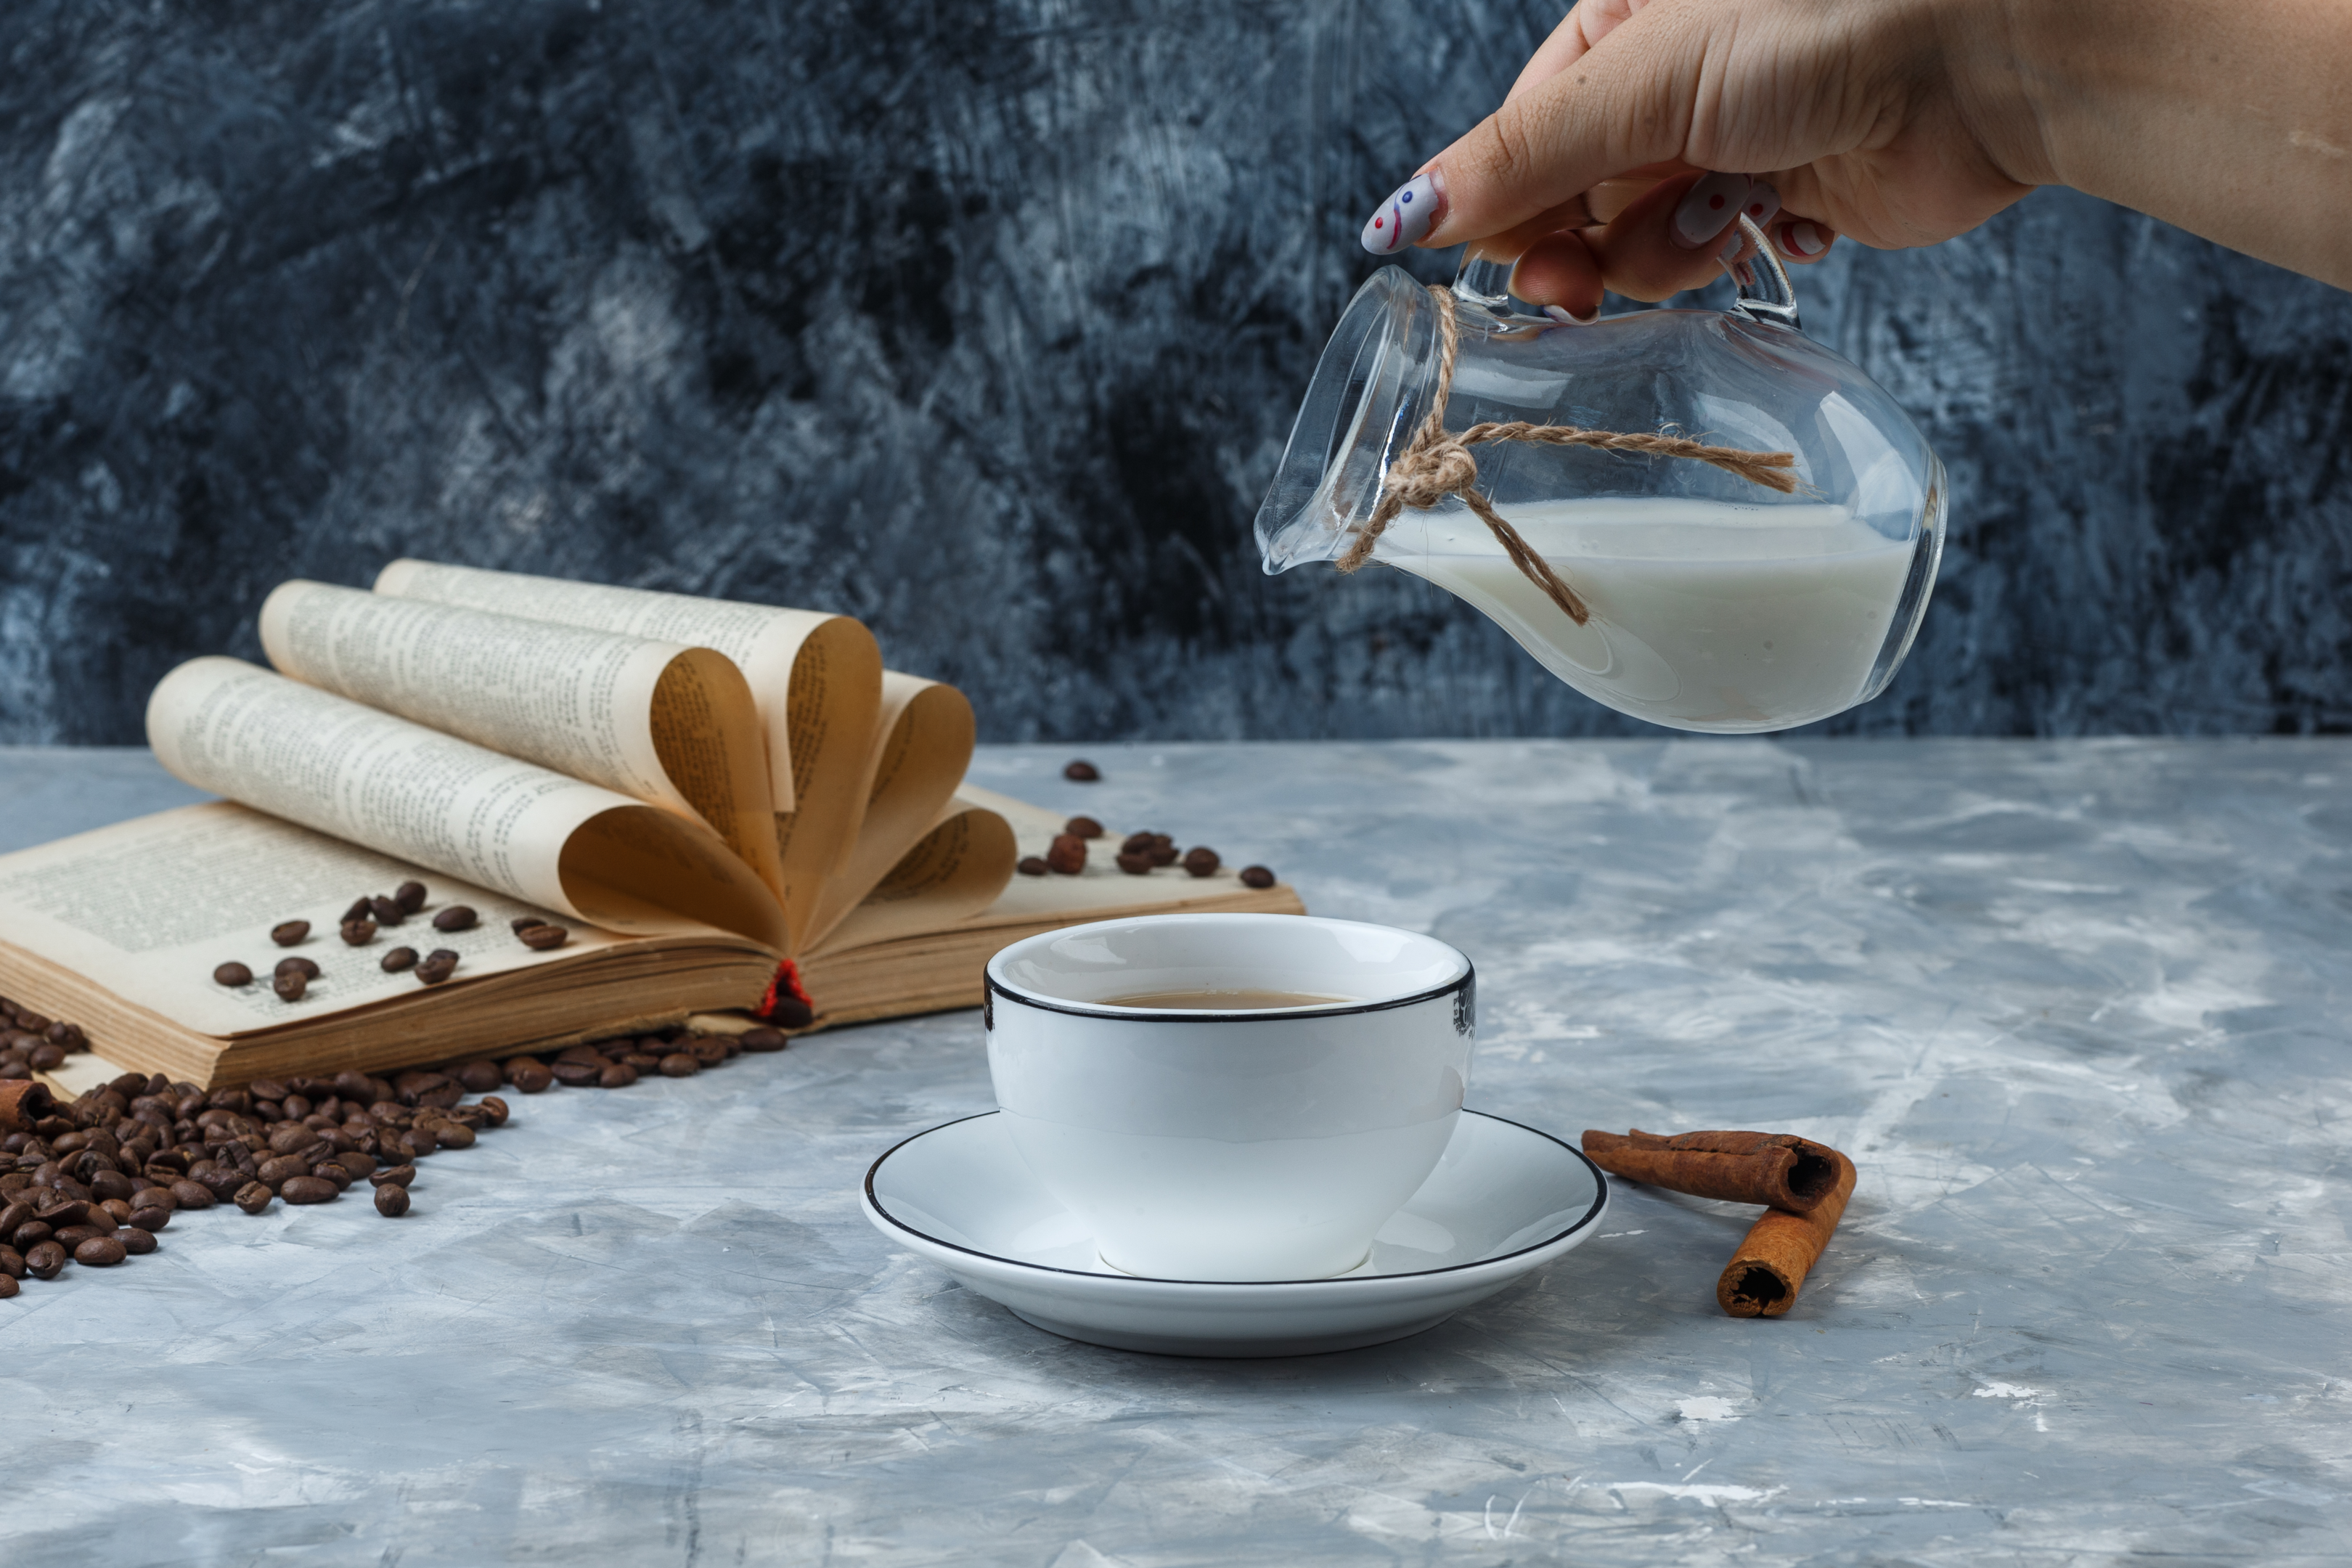 Café com leite e canela. Fonte: Freepik